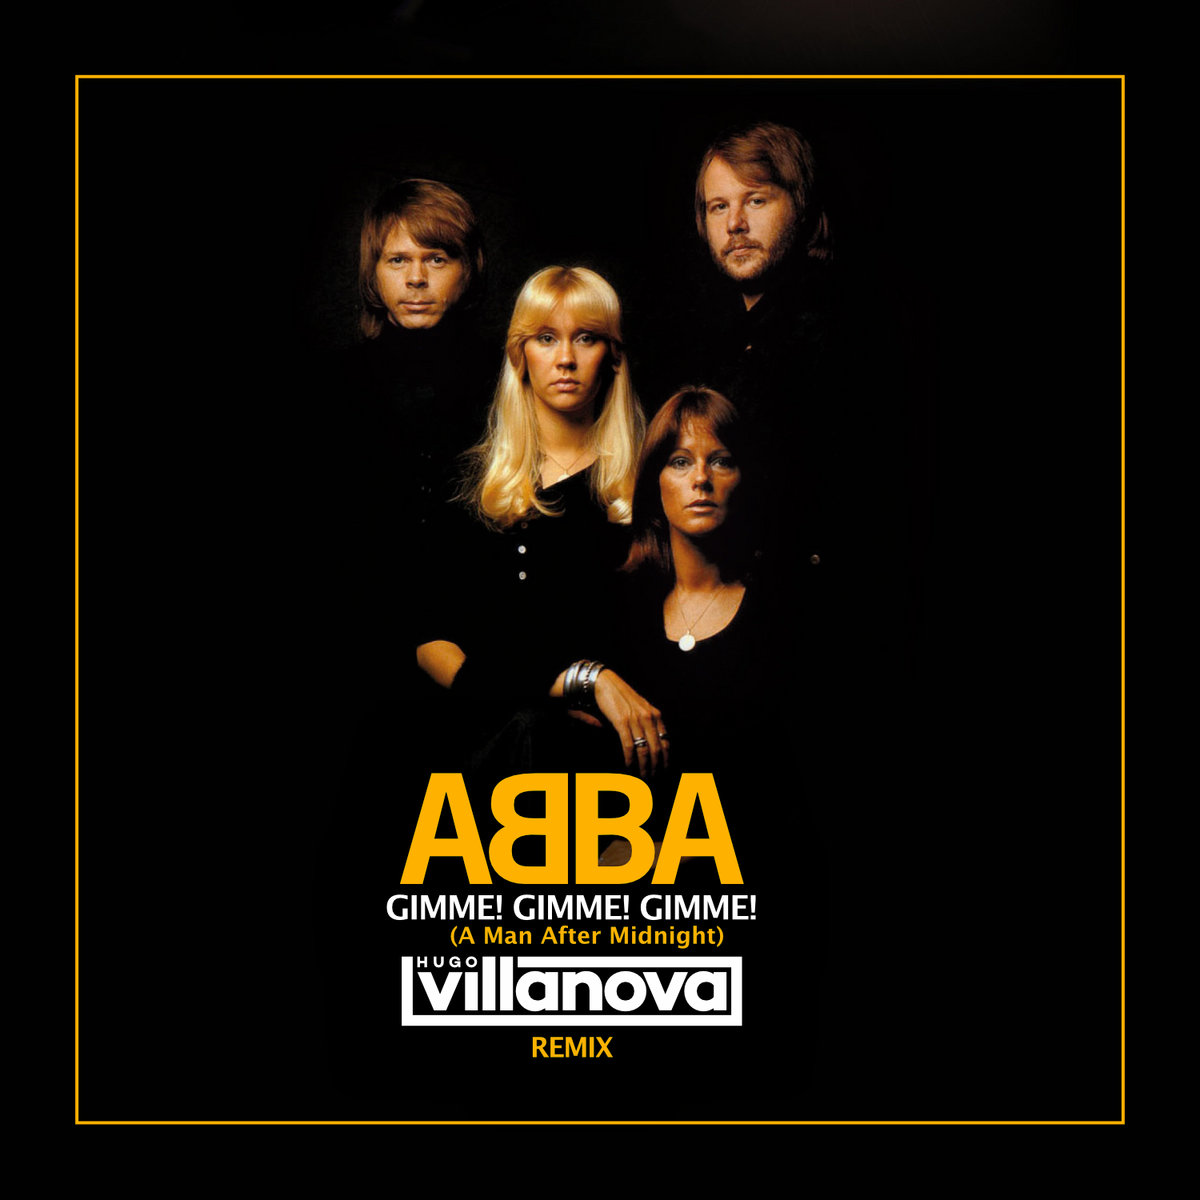 Abba - Gimme Gimme Gimme (Hugo Villanova Remix) | Hugo Villanova